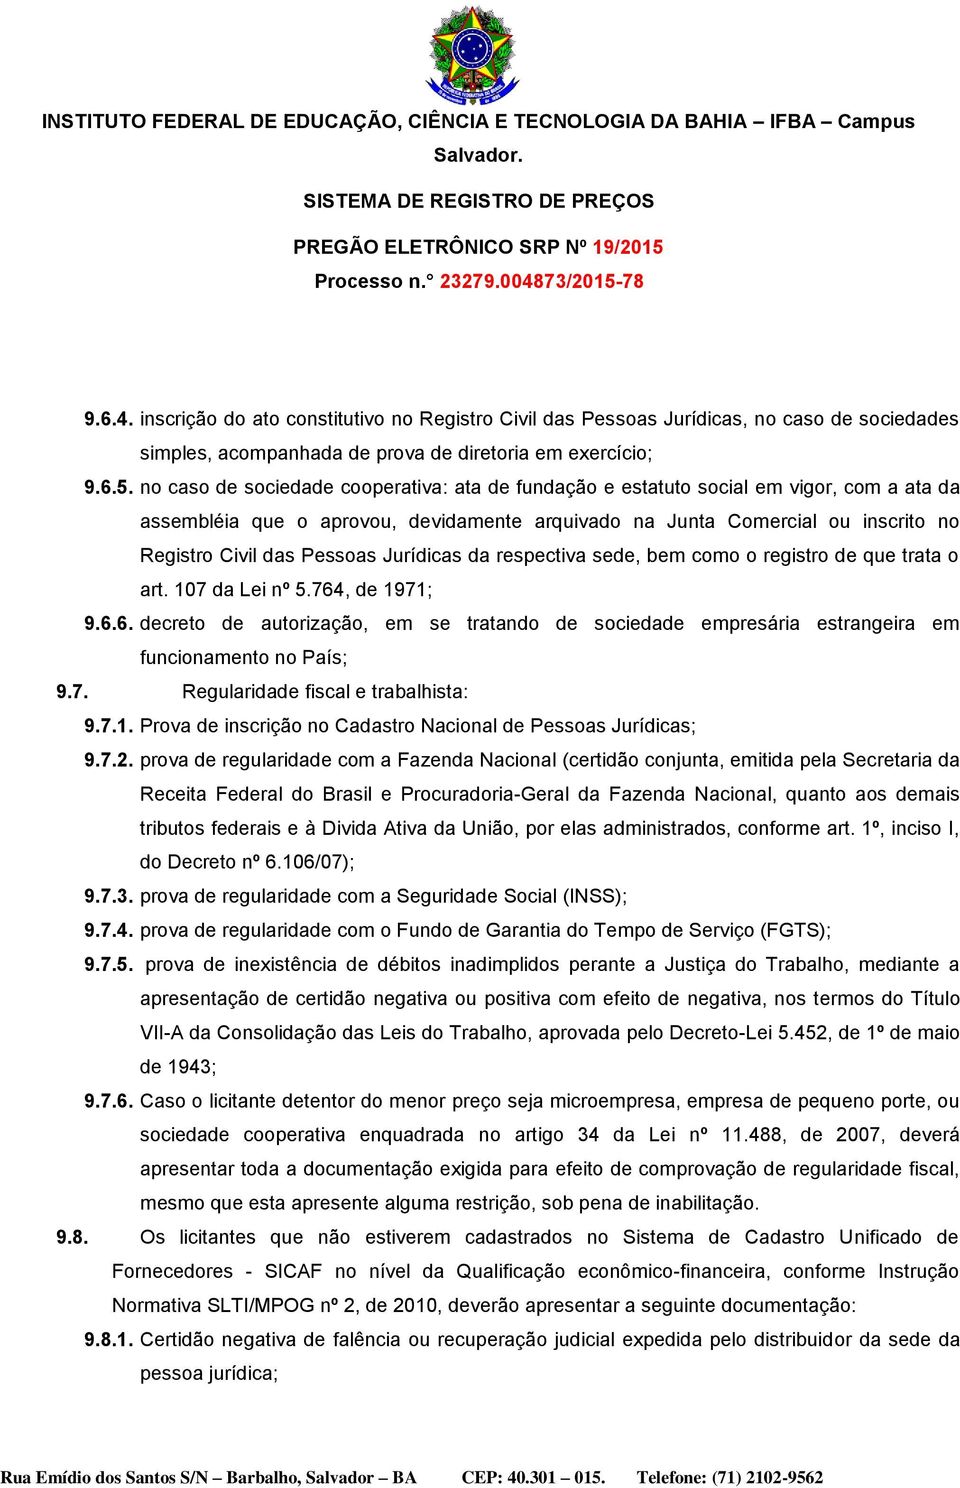 Jurídicas da respectiva sede, bem como o registro de que trata o art. 107 da Lei nº 5.764, de 1971; 9.6.6. decreto de autorização, em se tratando de sociedade empresária estrangeira em funcionamento no País; 9.